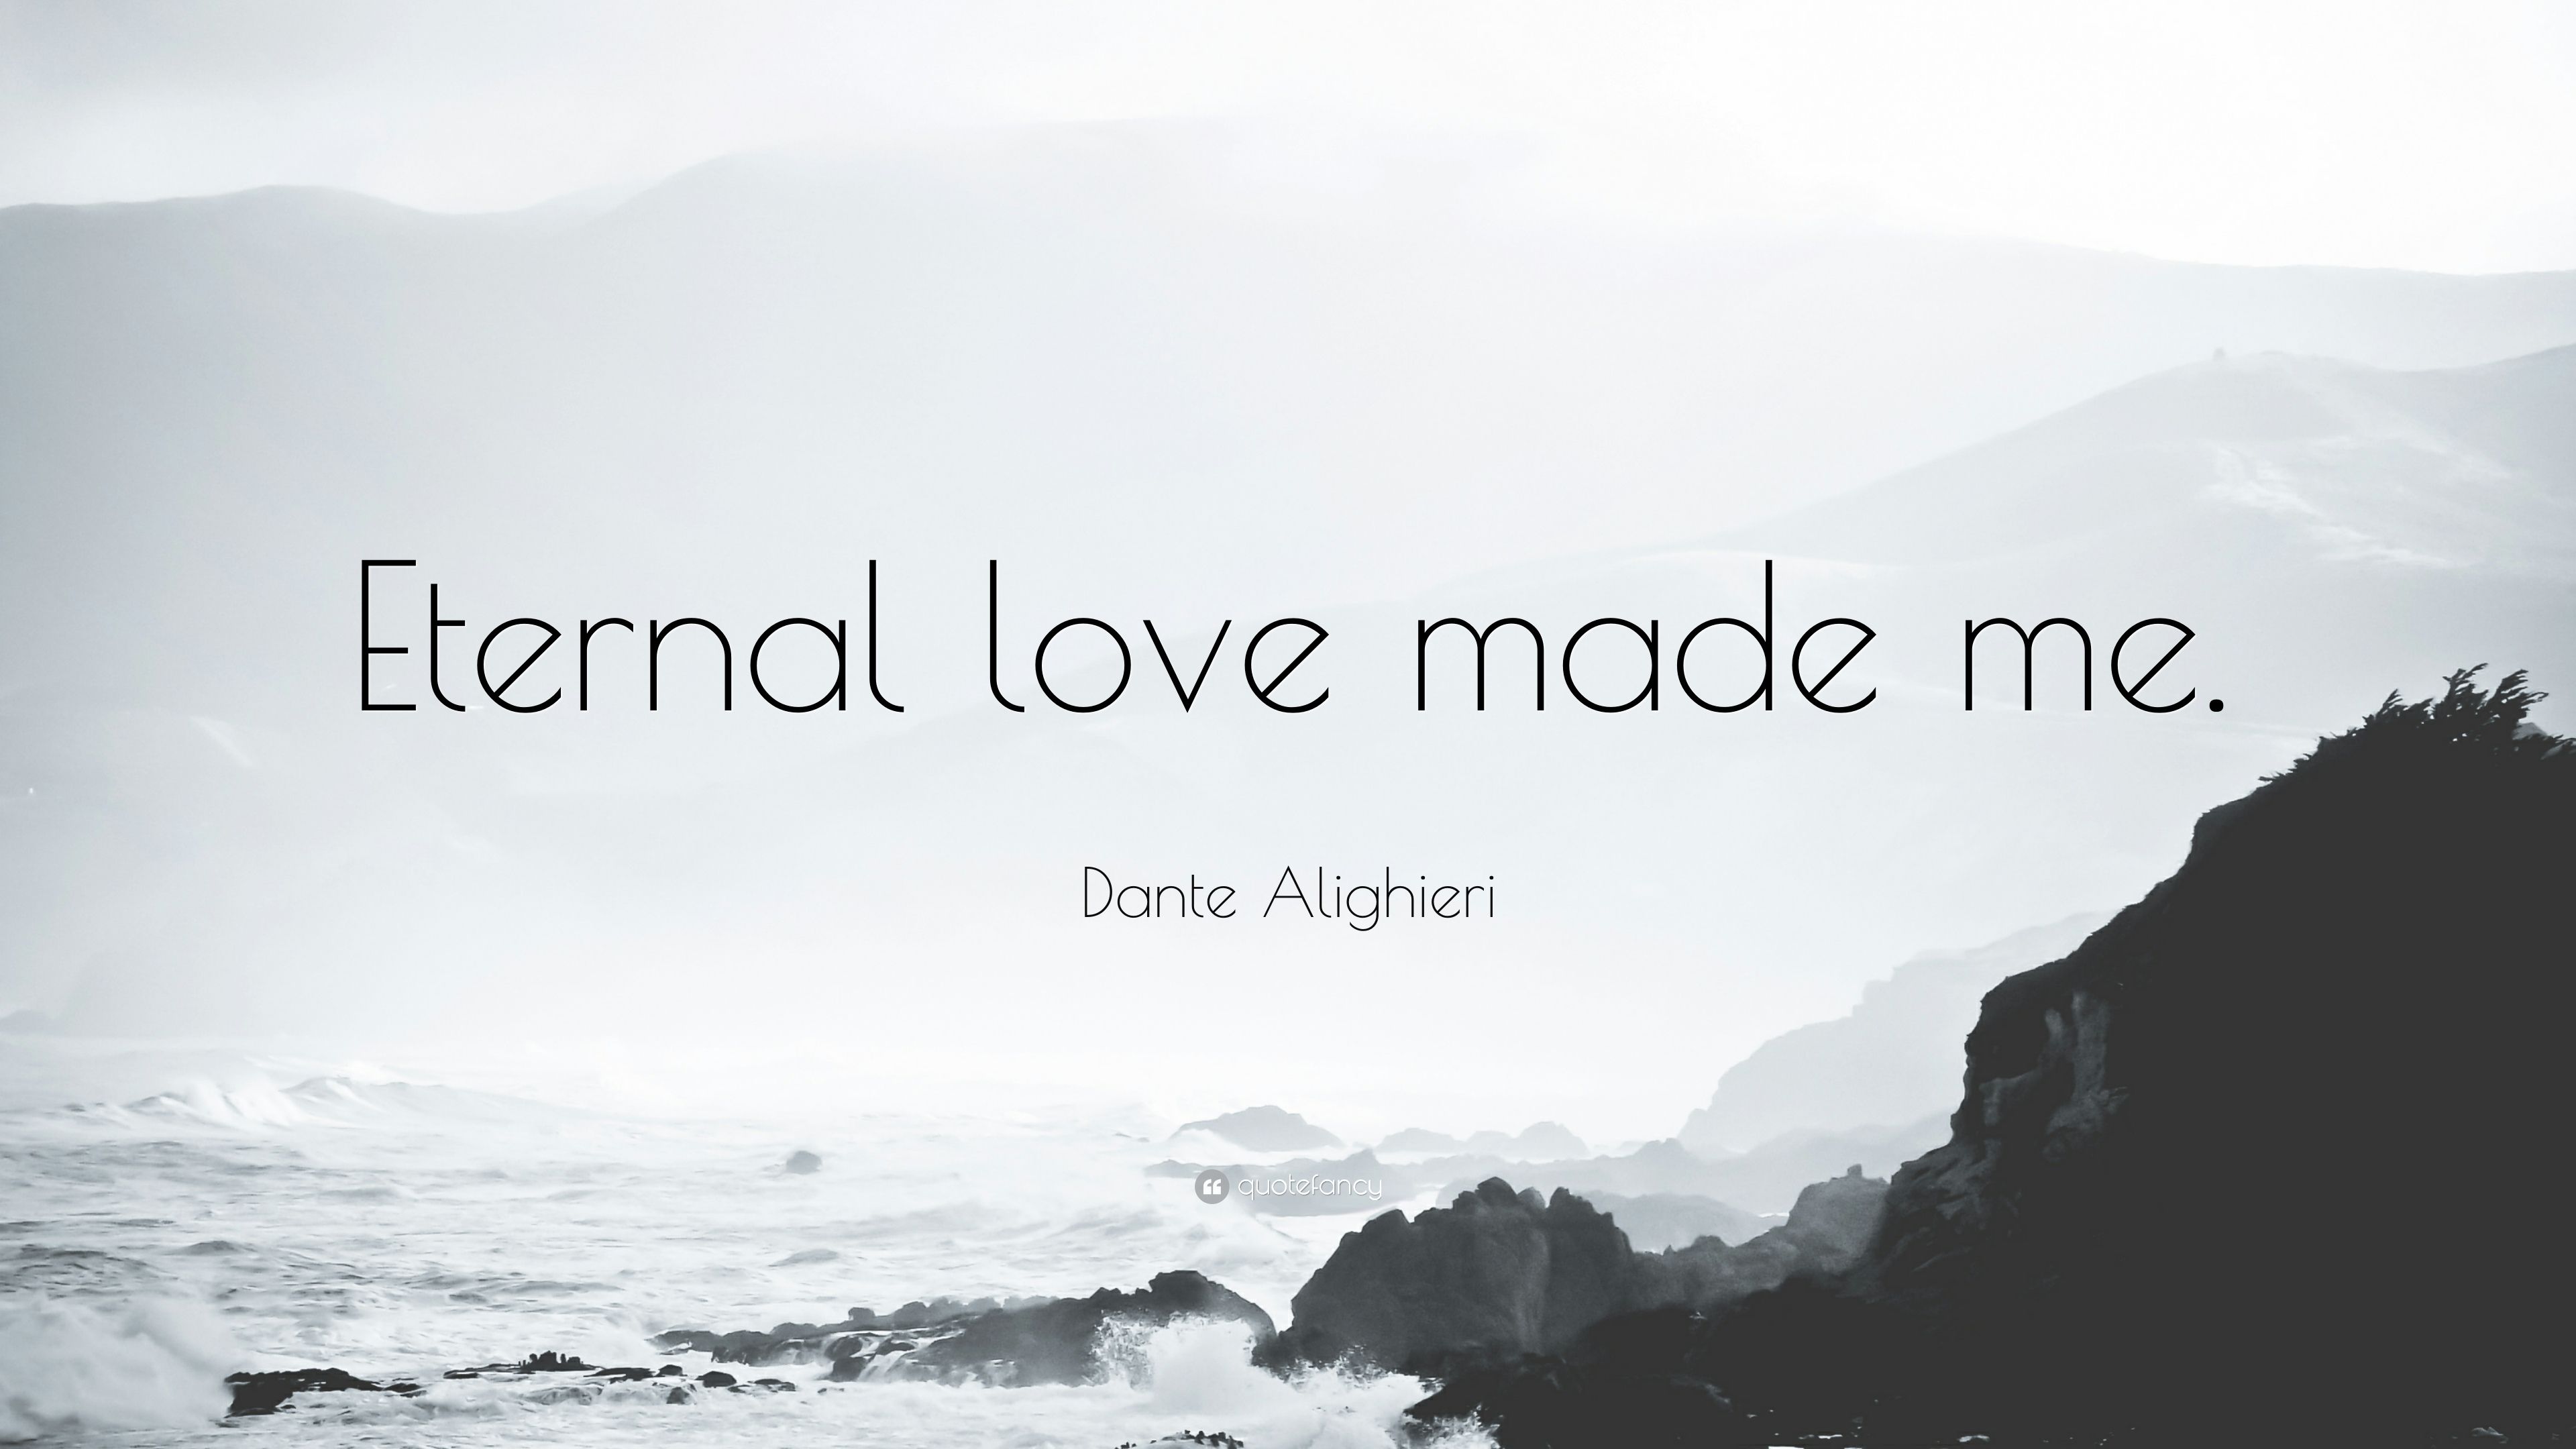 Dante Alighieri Quote: “Eternal love made me.” (12 wallpaper)